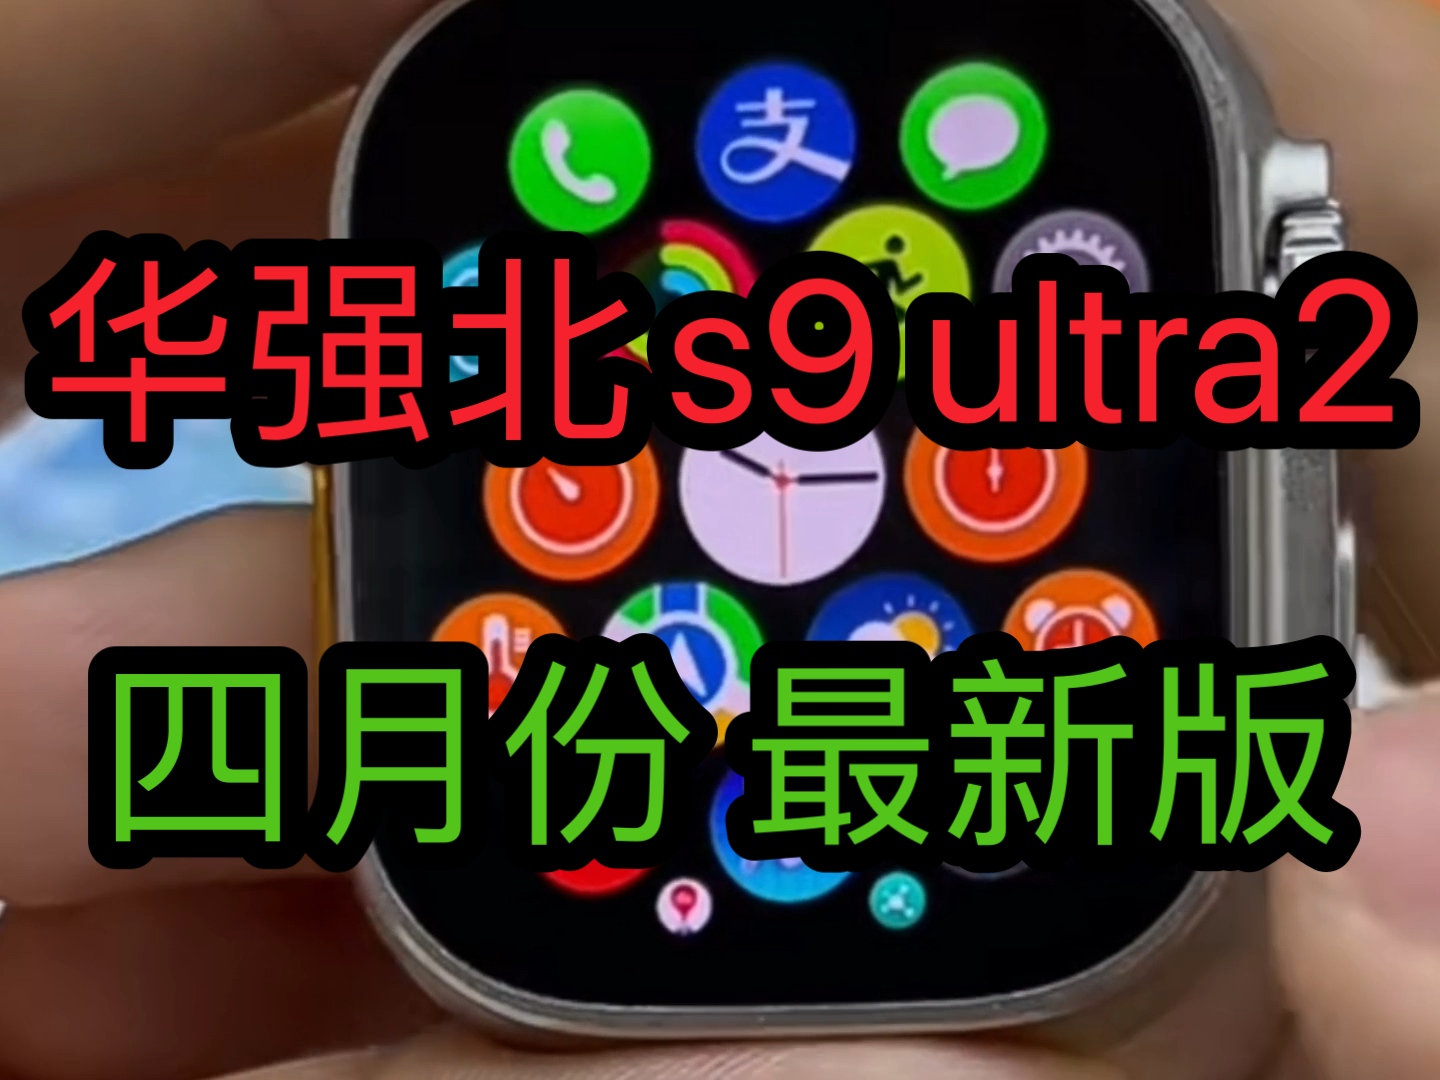 华强北s9 ultra2华强北手表智能苹果手表apple watch华强北s8 ultra四月份最新版